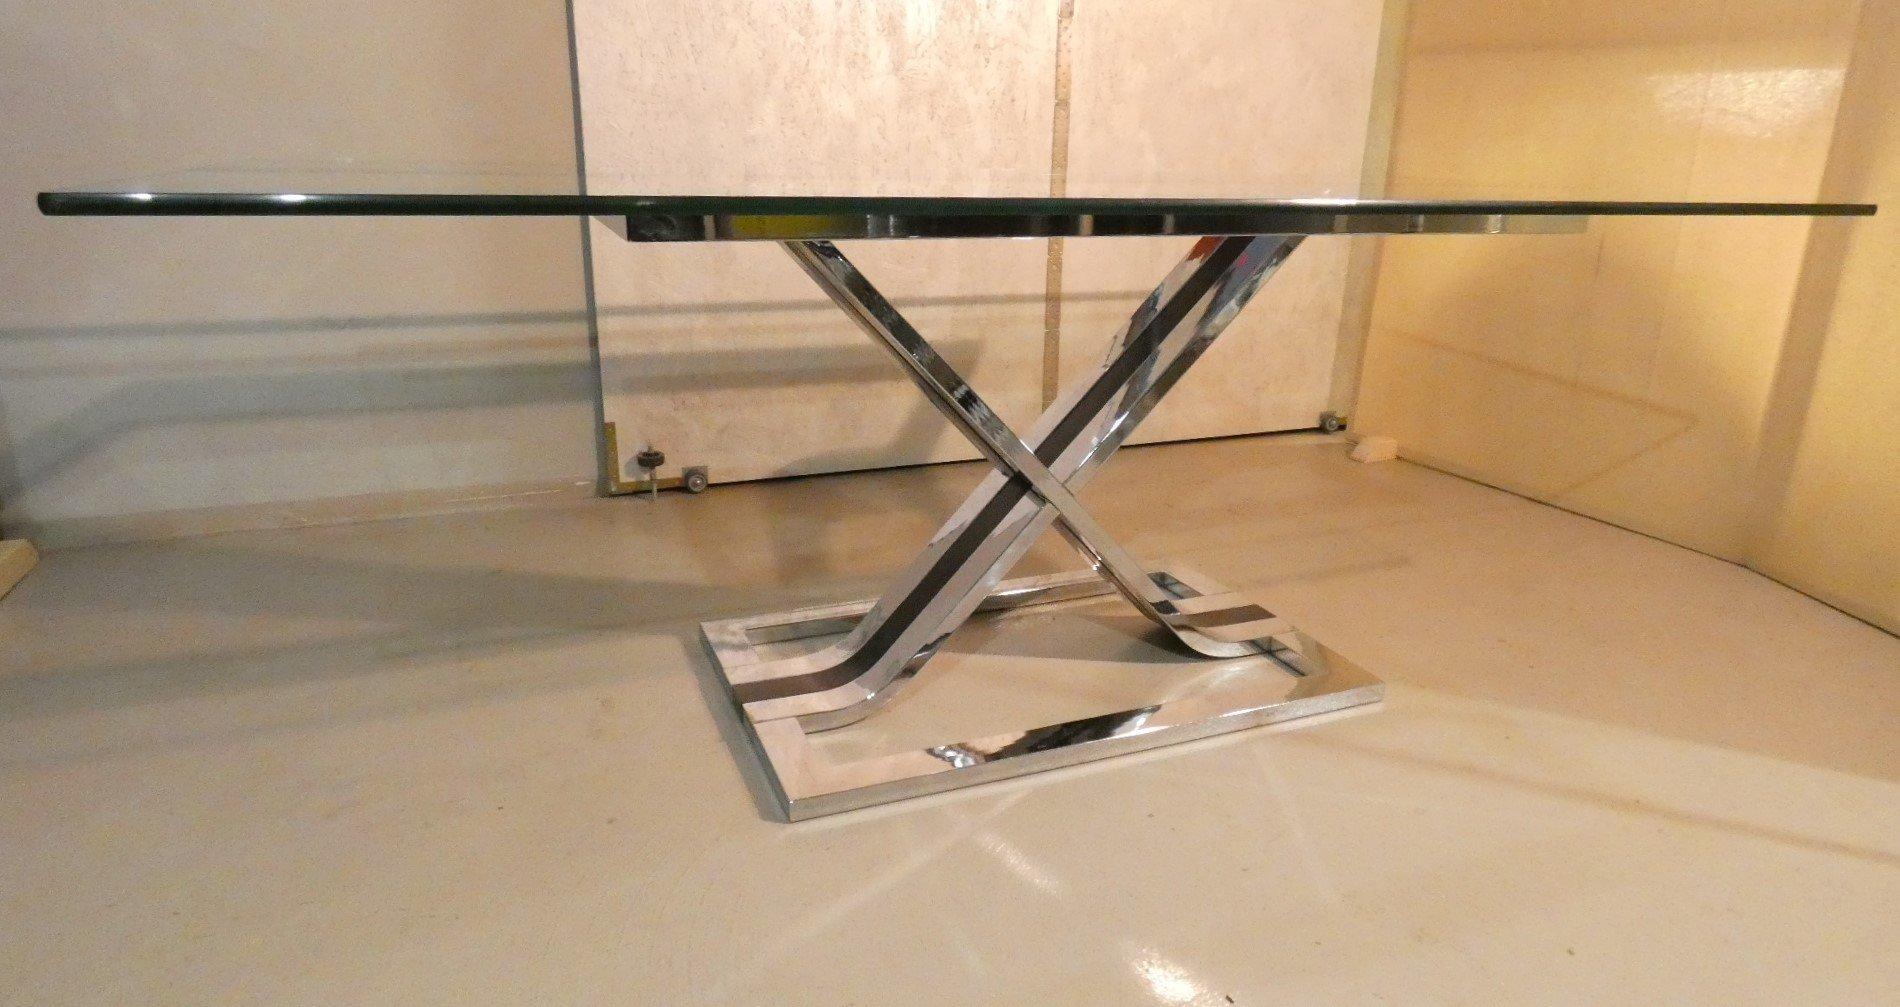 Parfaitement conservée et belle...
Produite au milieu des années 1970, cette table de salle à manger à six places est fabriquée en verre transparent de 1,5 cm d'épaisseur et repose sur une sculpture en acier chromé en trois parties, dont la partie